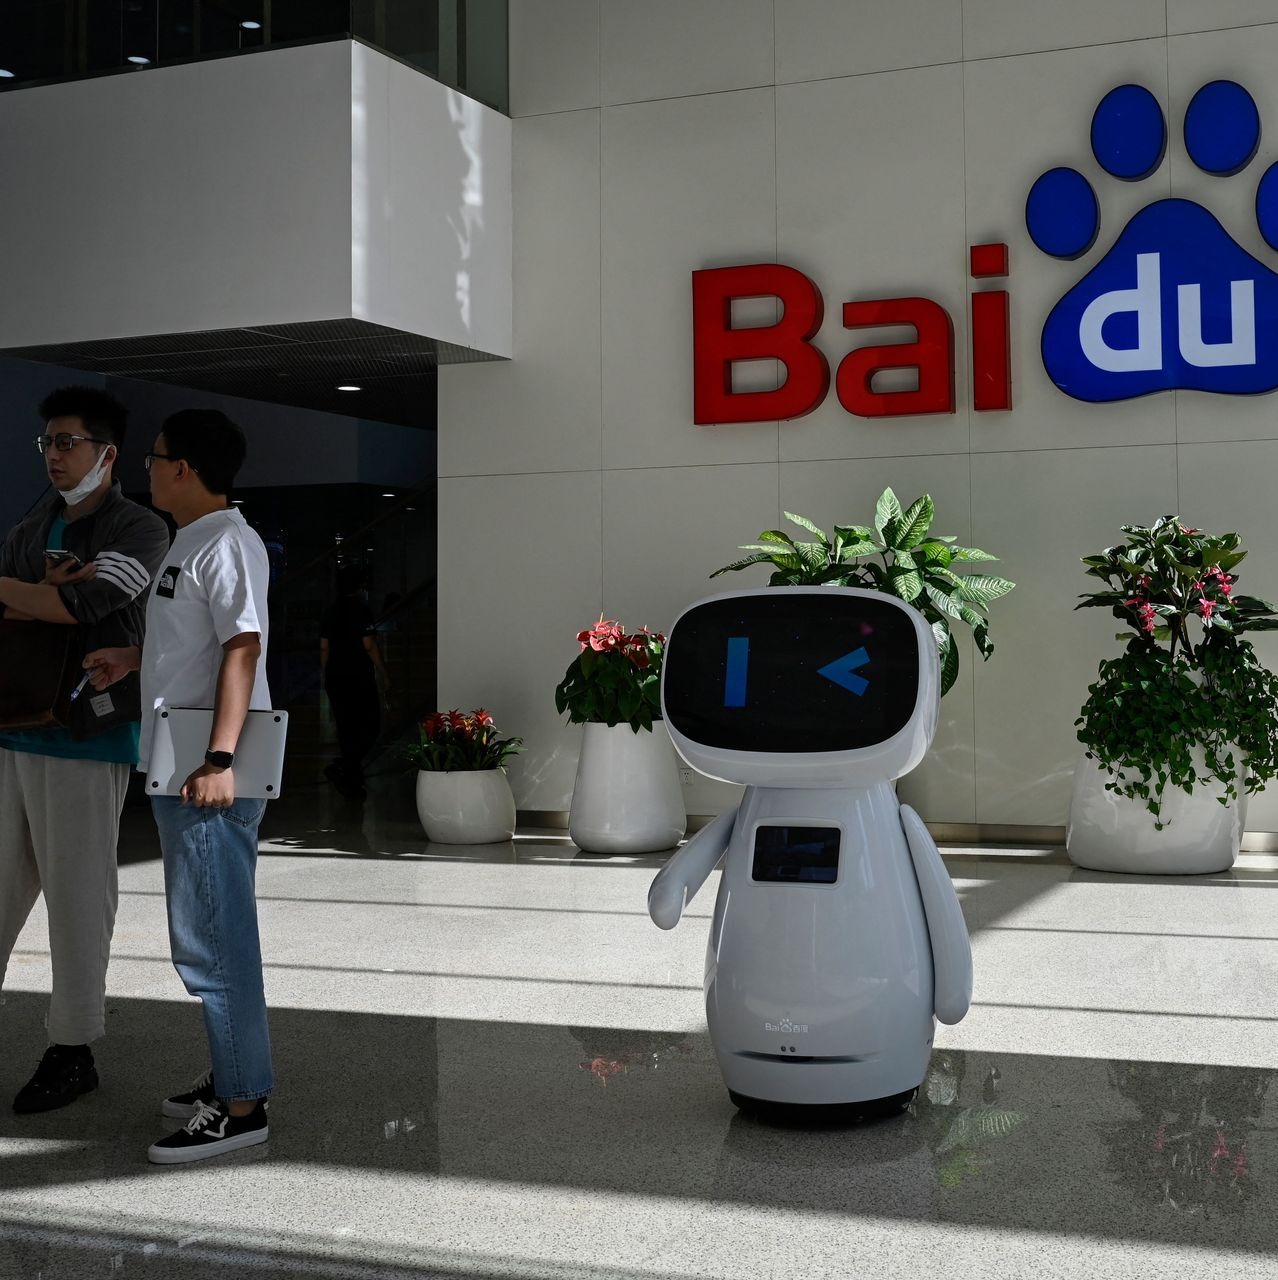 Baidu vội vã ra mắt chatbot chưa hoàn thiện, cổ phiếu công ty lập tức lao dốc - Ảnh 2.